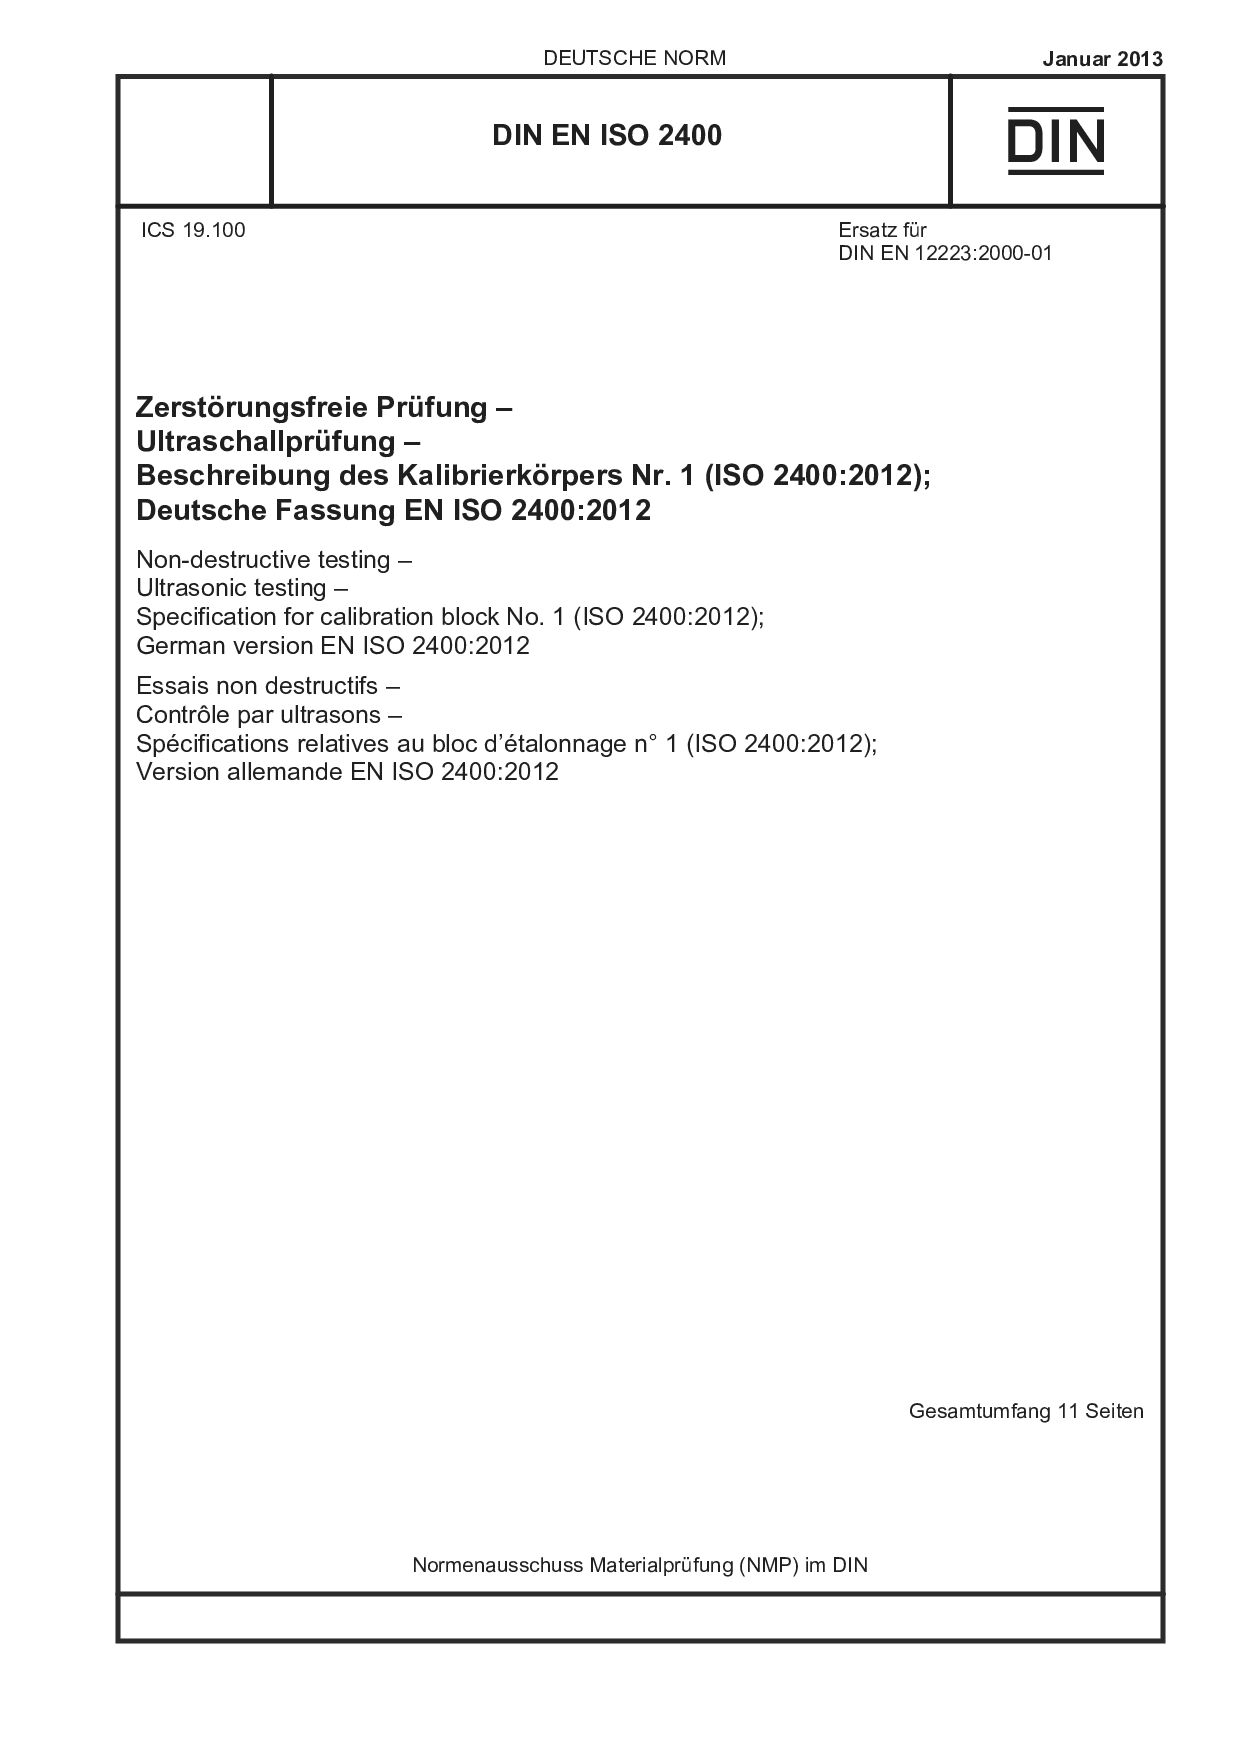 DIN EN ISO 2400:2013封面图